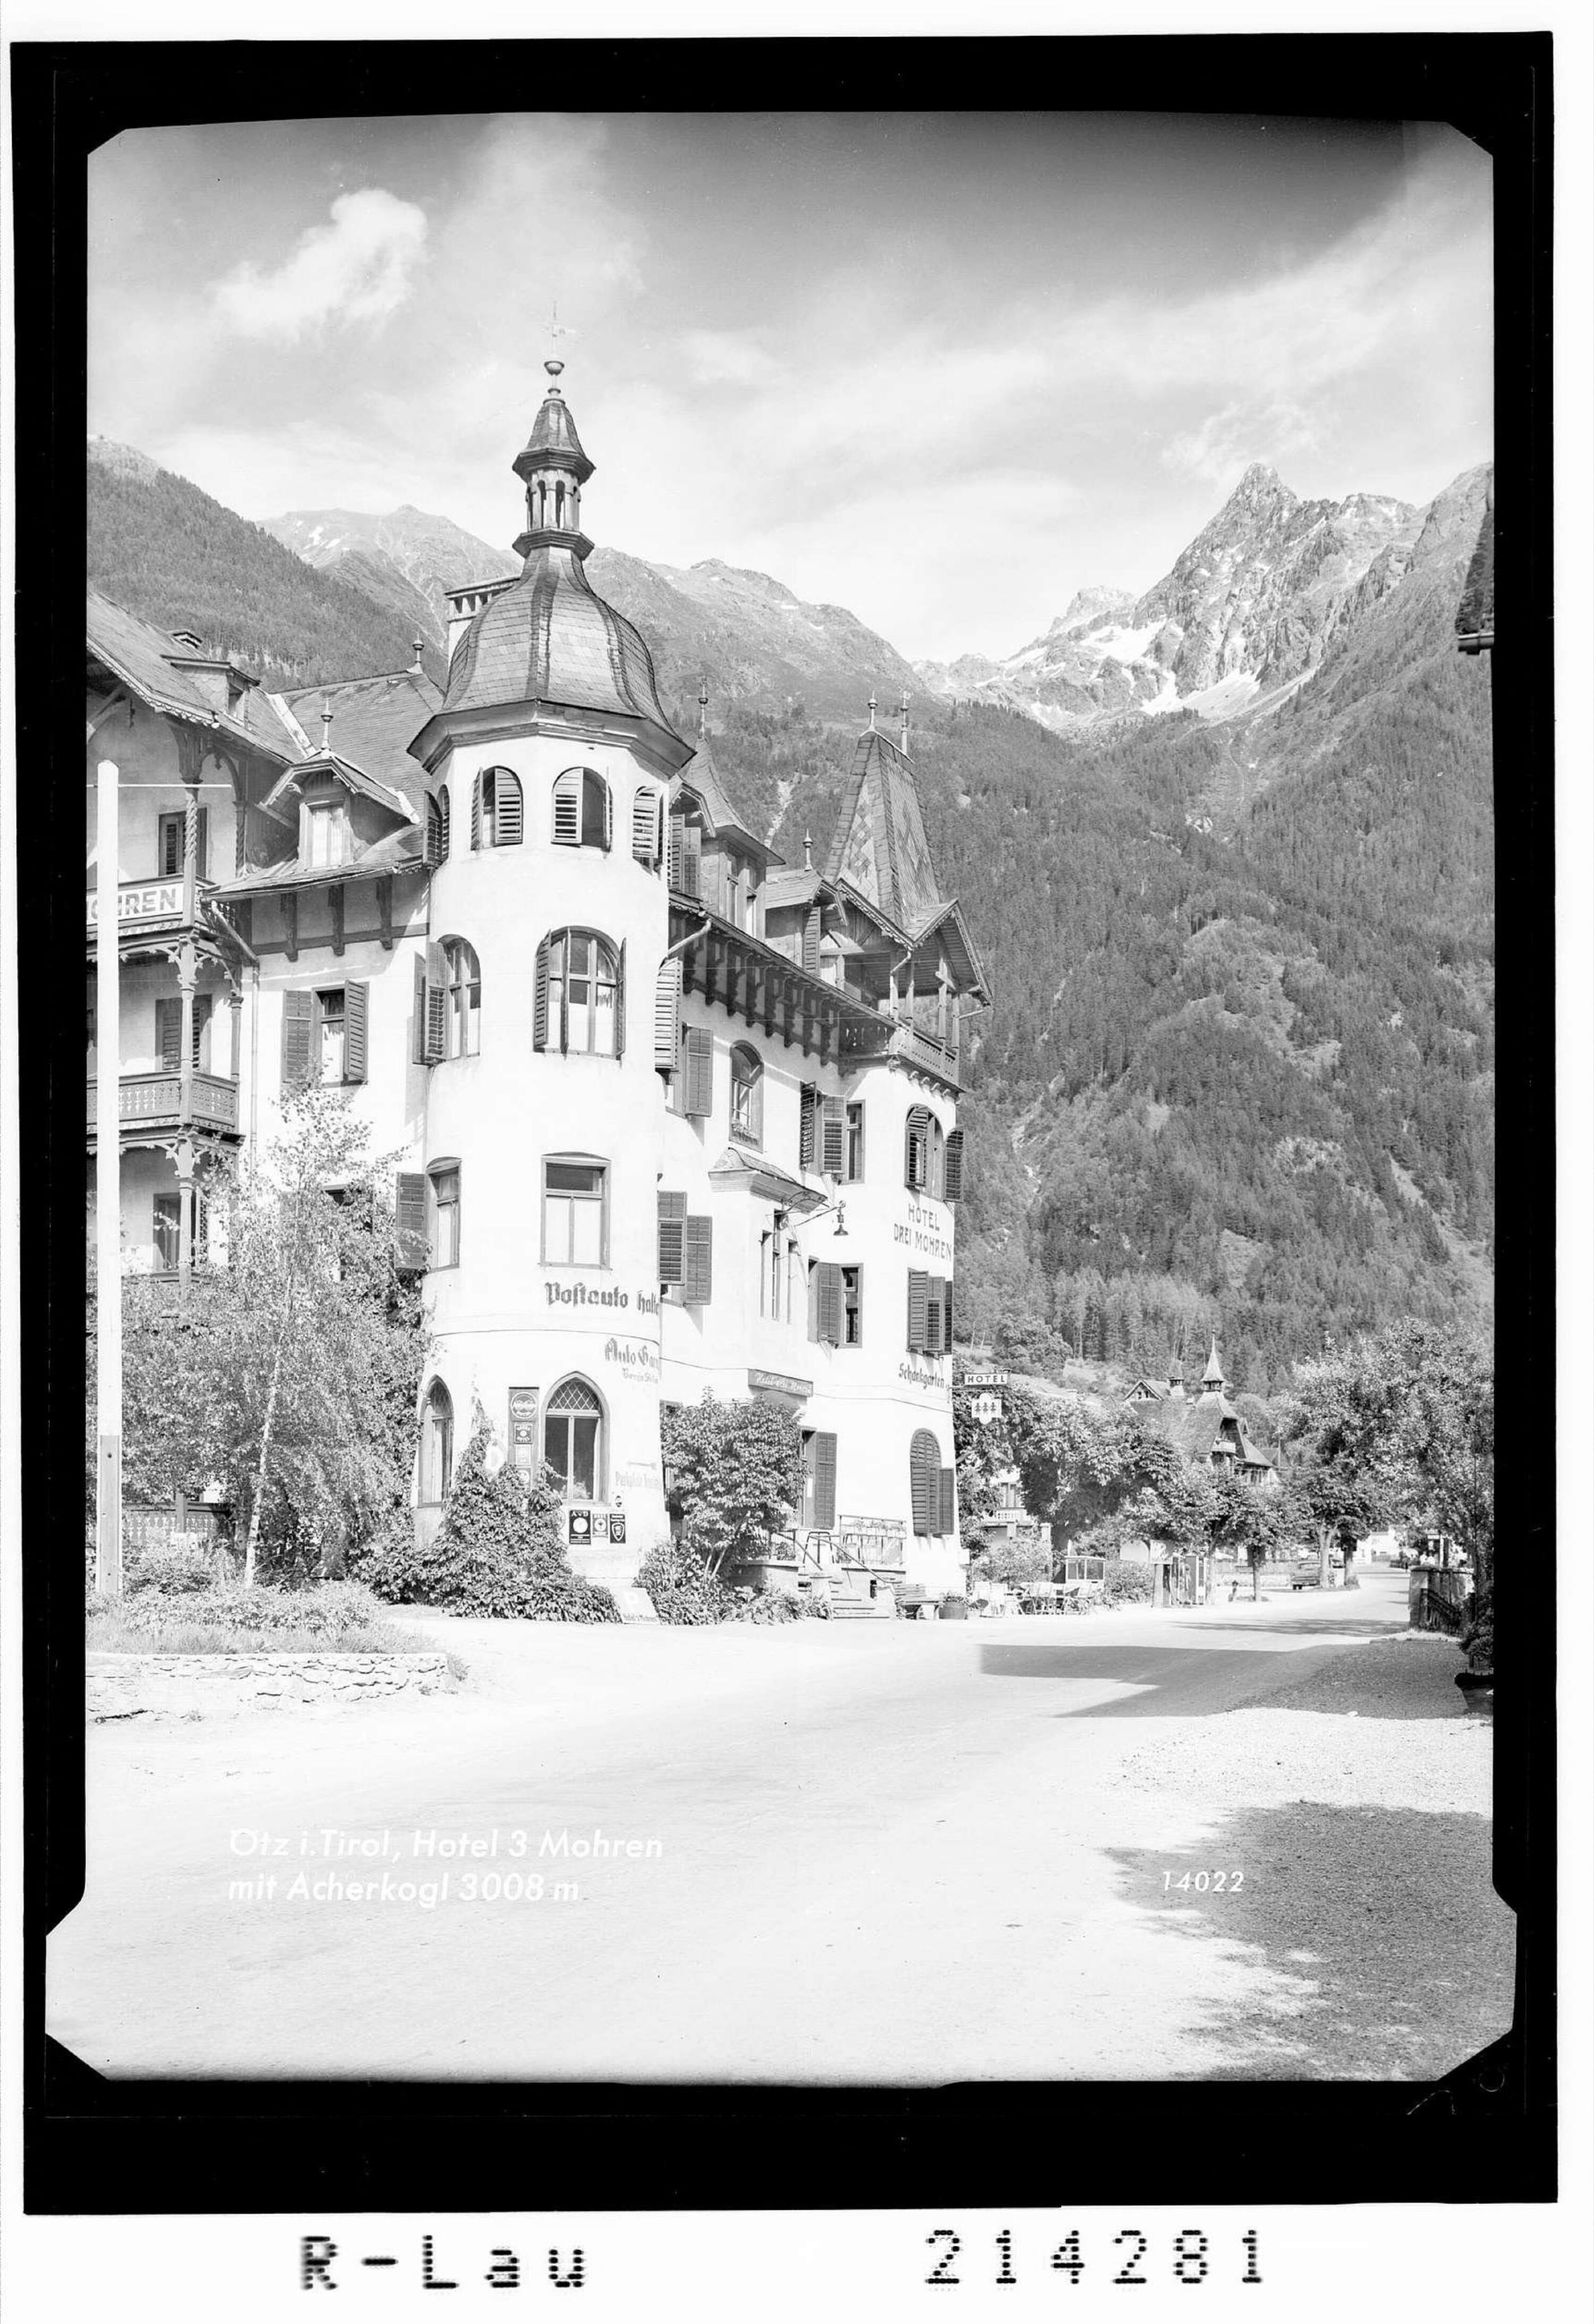 Ötz in Tirol / Hotel Drei Mohren mit Acherkogl></div>


    <hr>
    <div class=